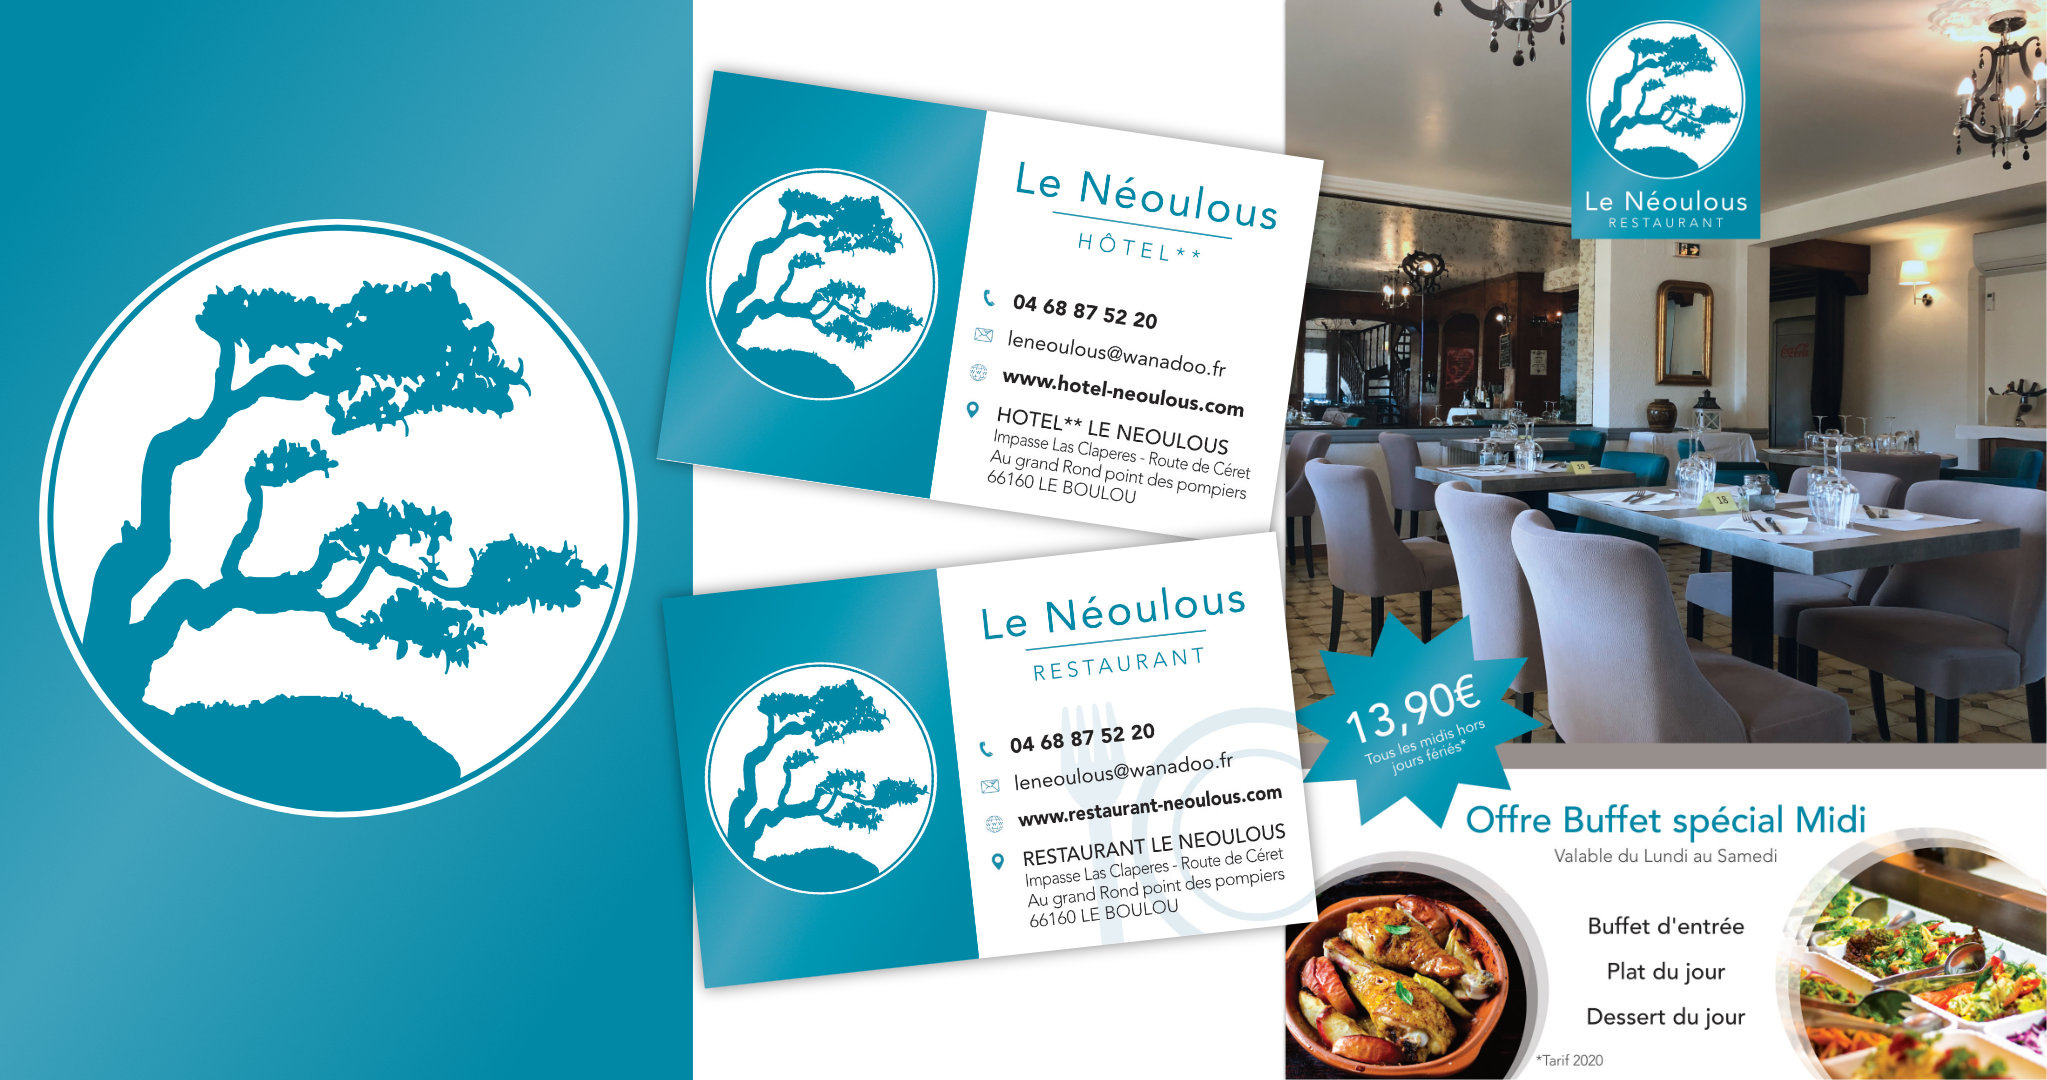 image_de_marque_restaurant_neoulous.jpg